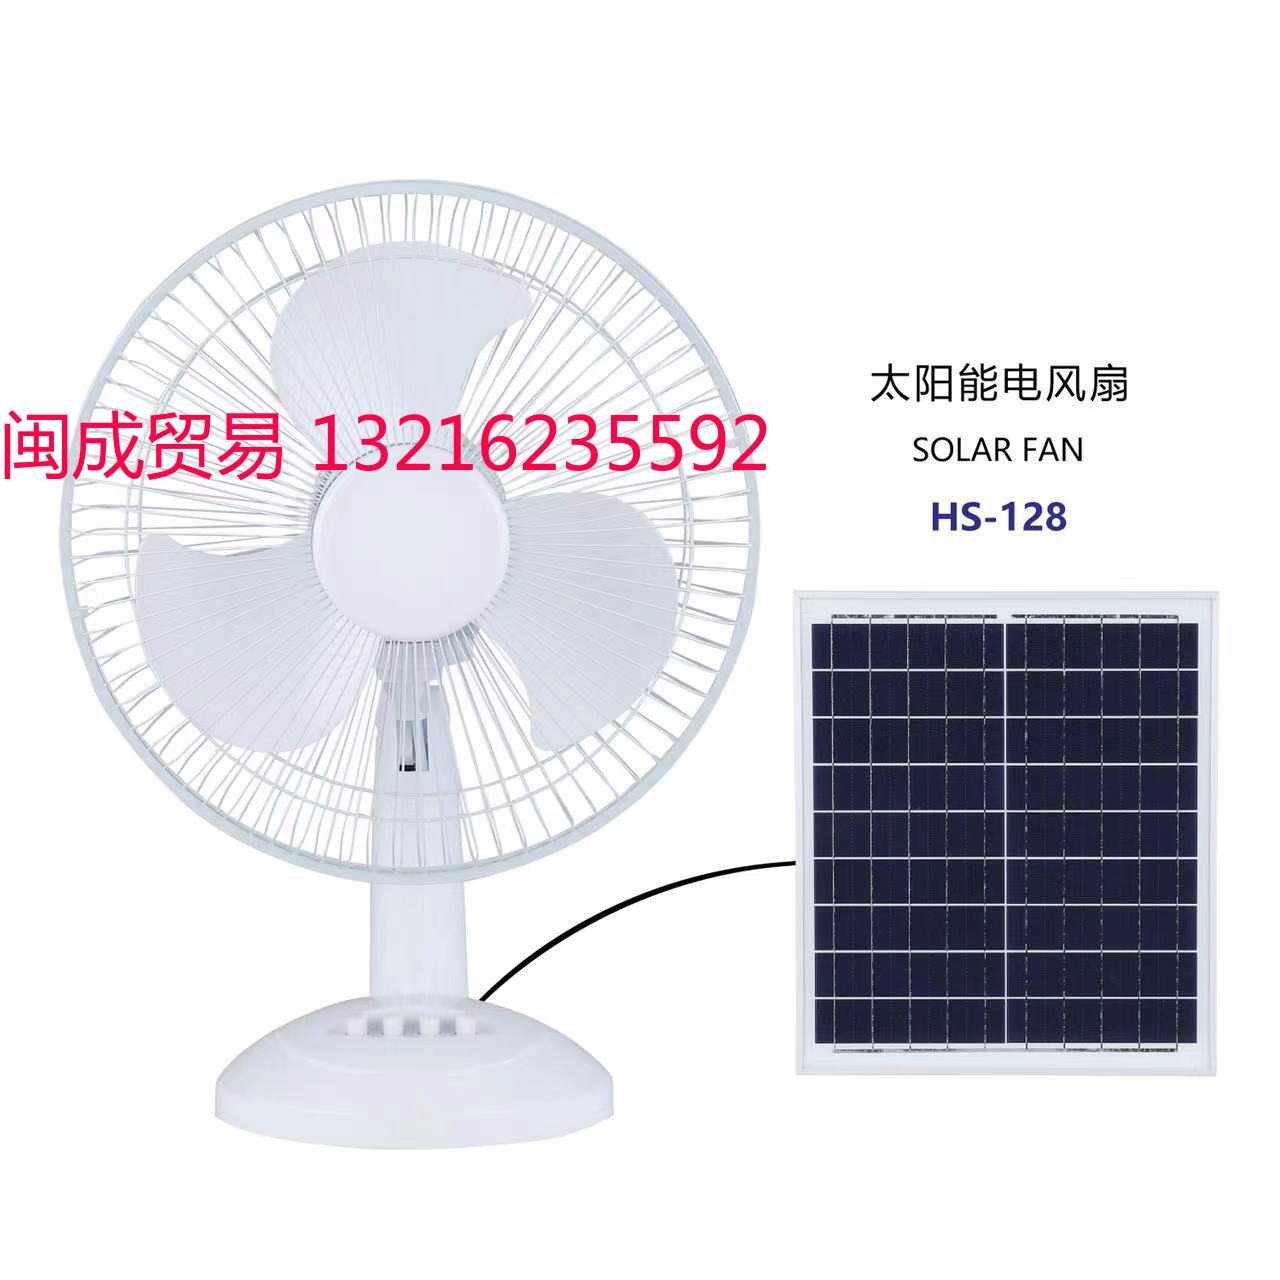 太阳能风扇 Solar fan HS-128